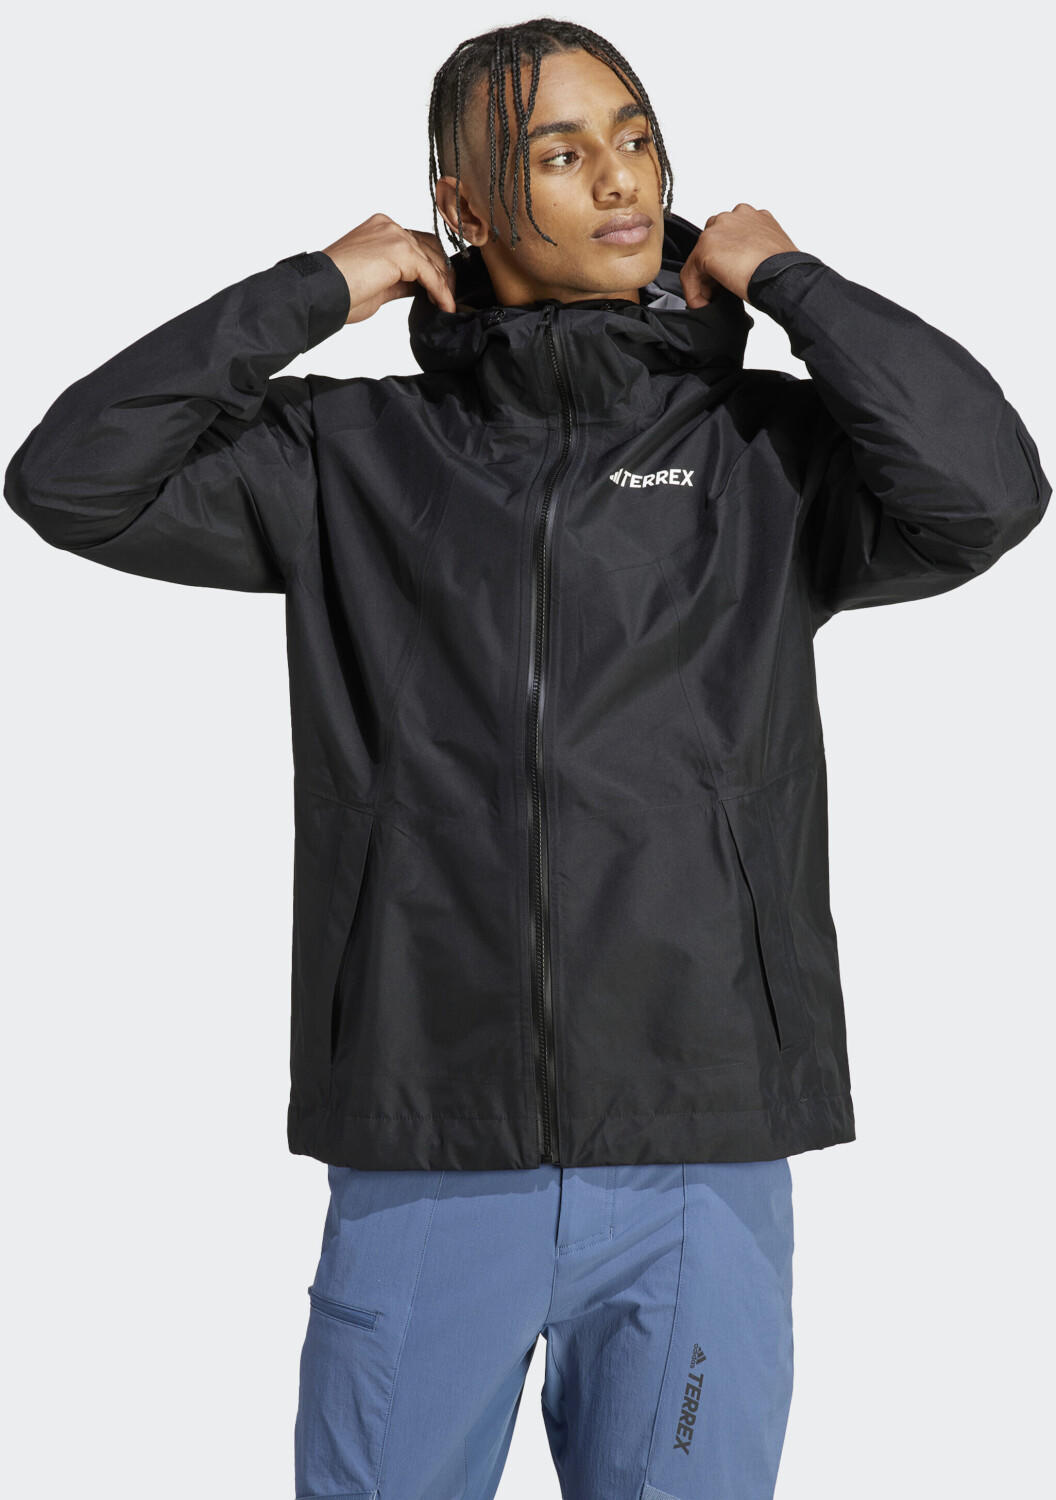 Test Jacket black € Paclite ab Xperior TERREX Man - (HN2906) Rain GORE-TEX 216,90 Adidas